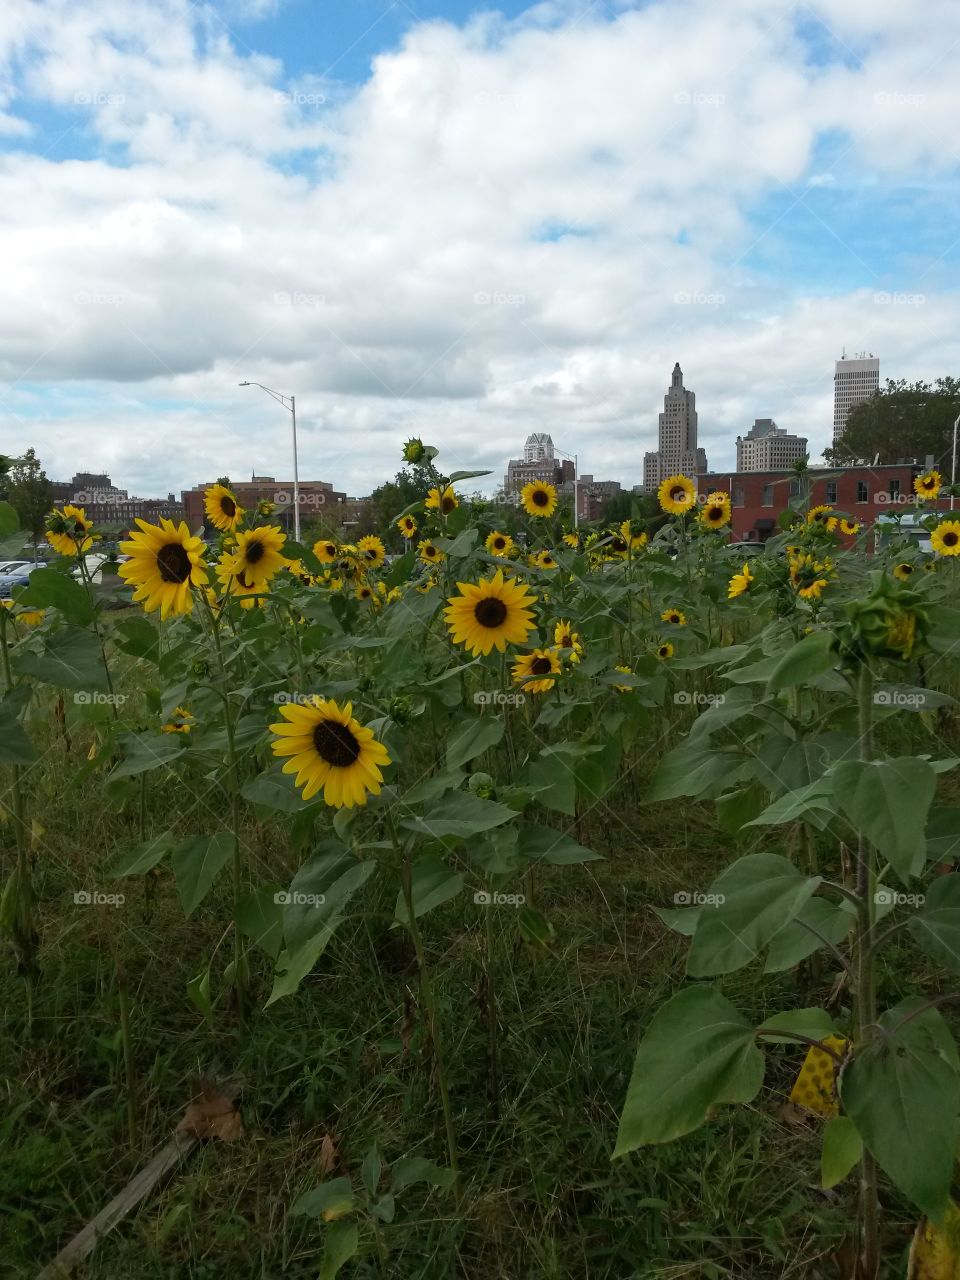 city sunflowers